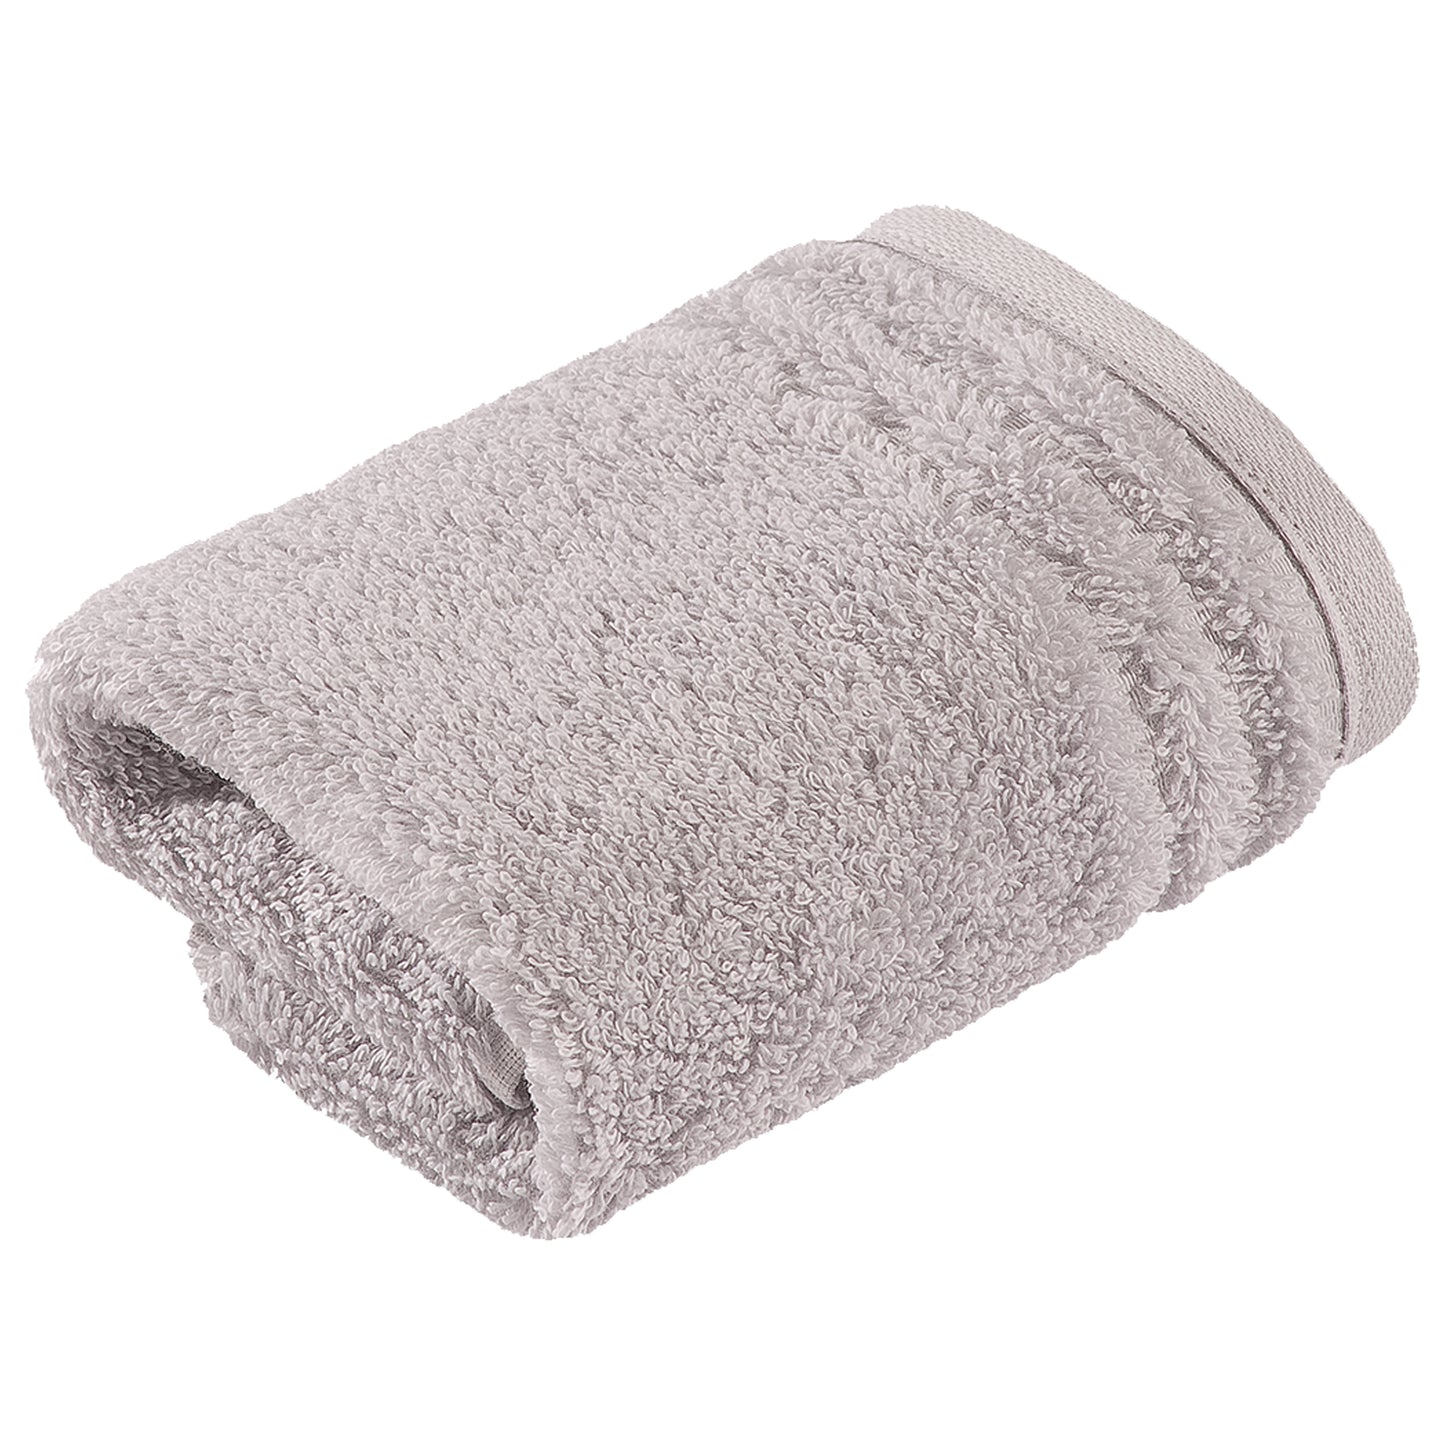 Ręcznik z bawełny organicznej Vienna Style light grey